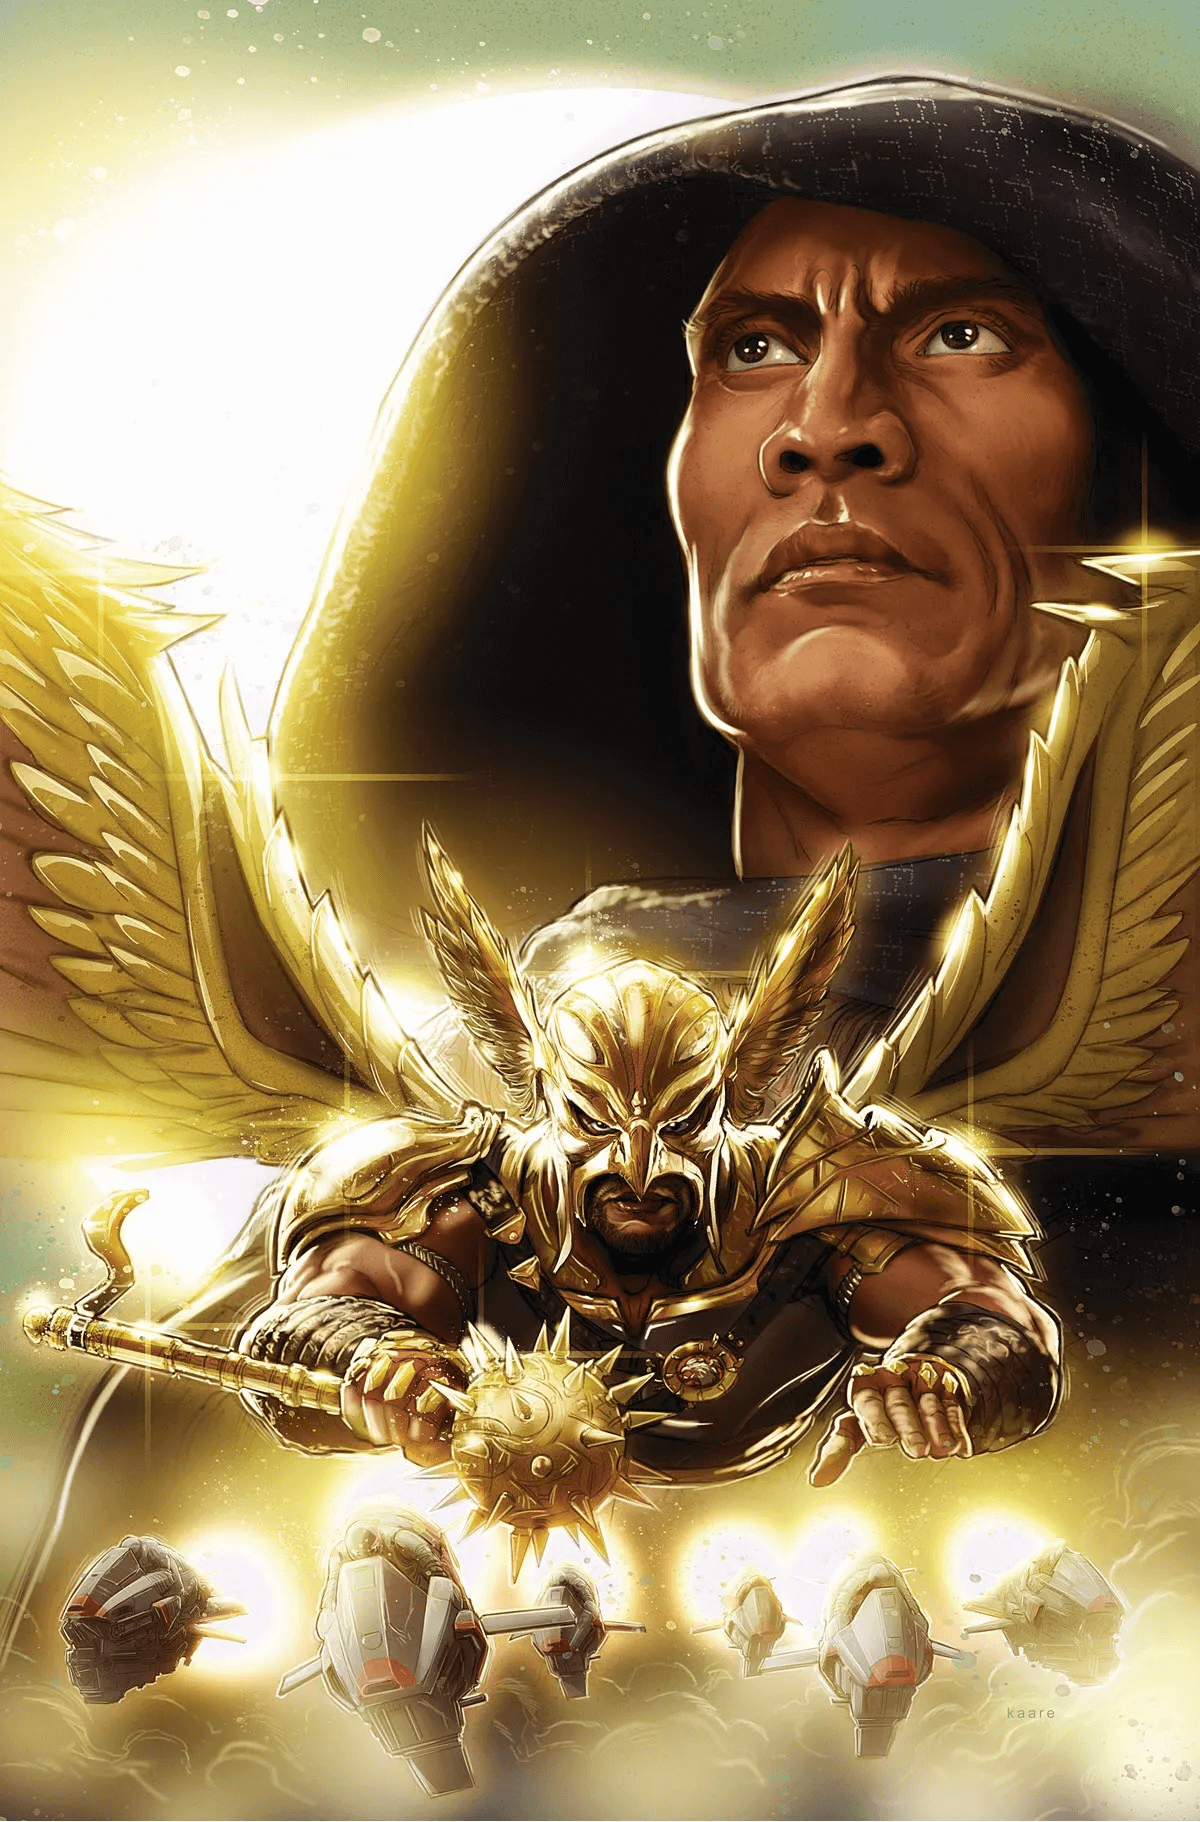 Cover di Black Adam – The Justice Society Files: Hawkman di Kaare Andrews, prequel del film